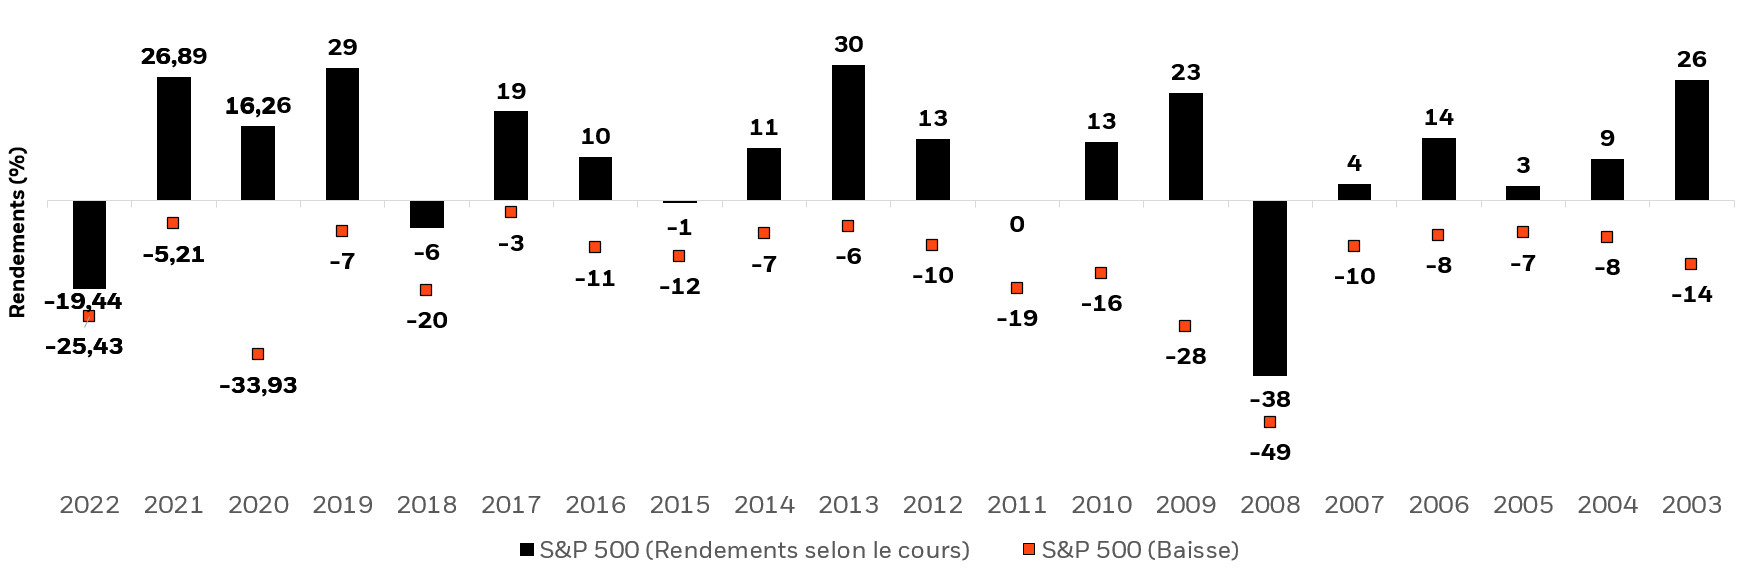 Graphique à barres illustrant les rendements annuels de l’indice S&P 500 ainsi que les baisses intra-annuelles.